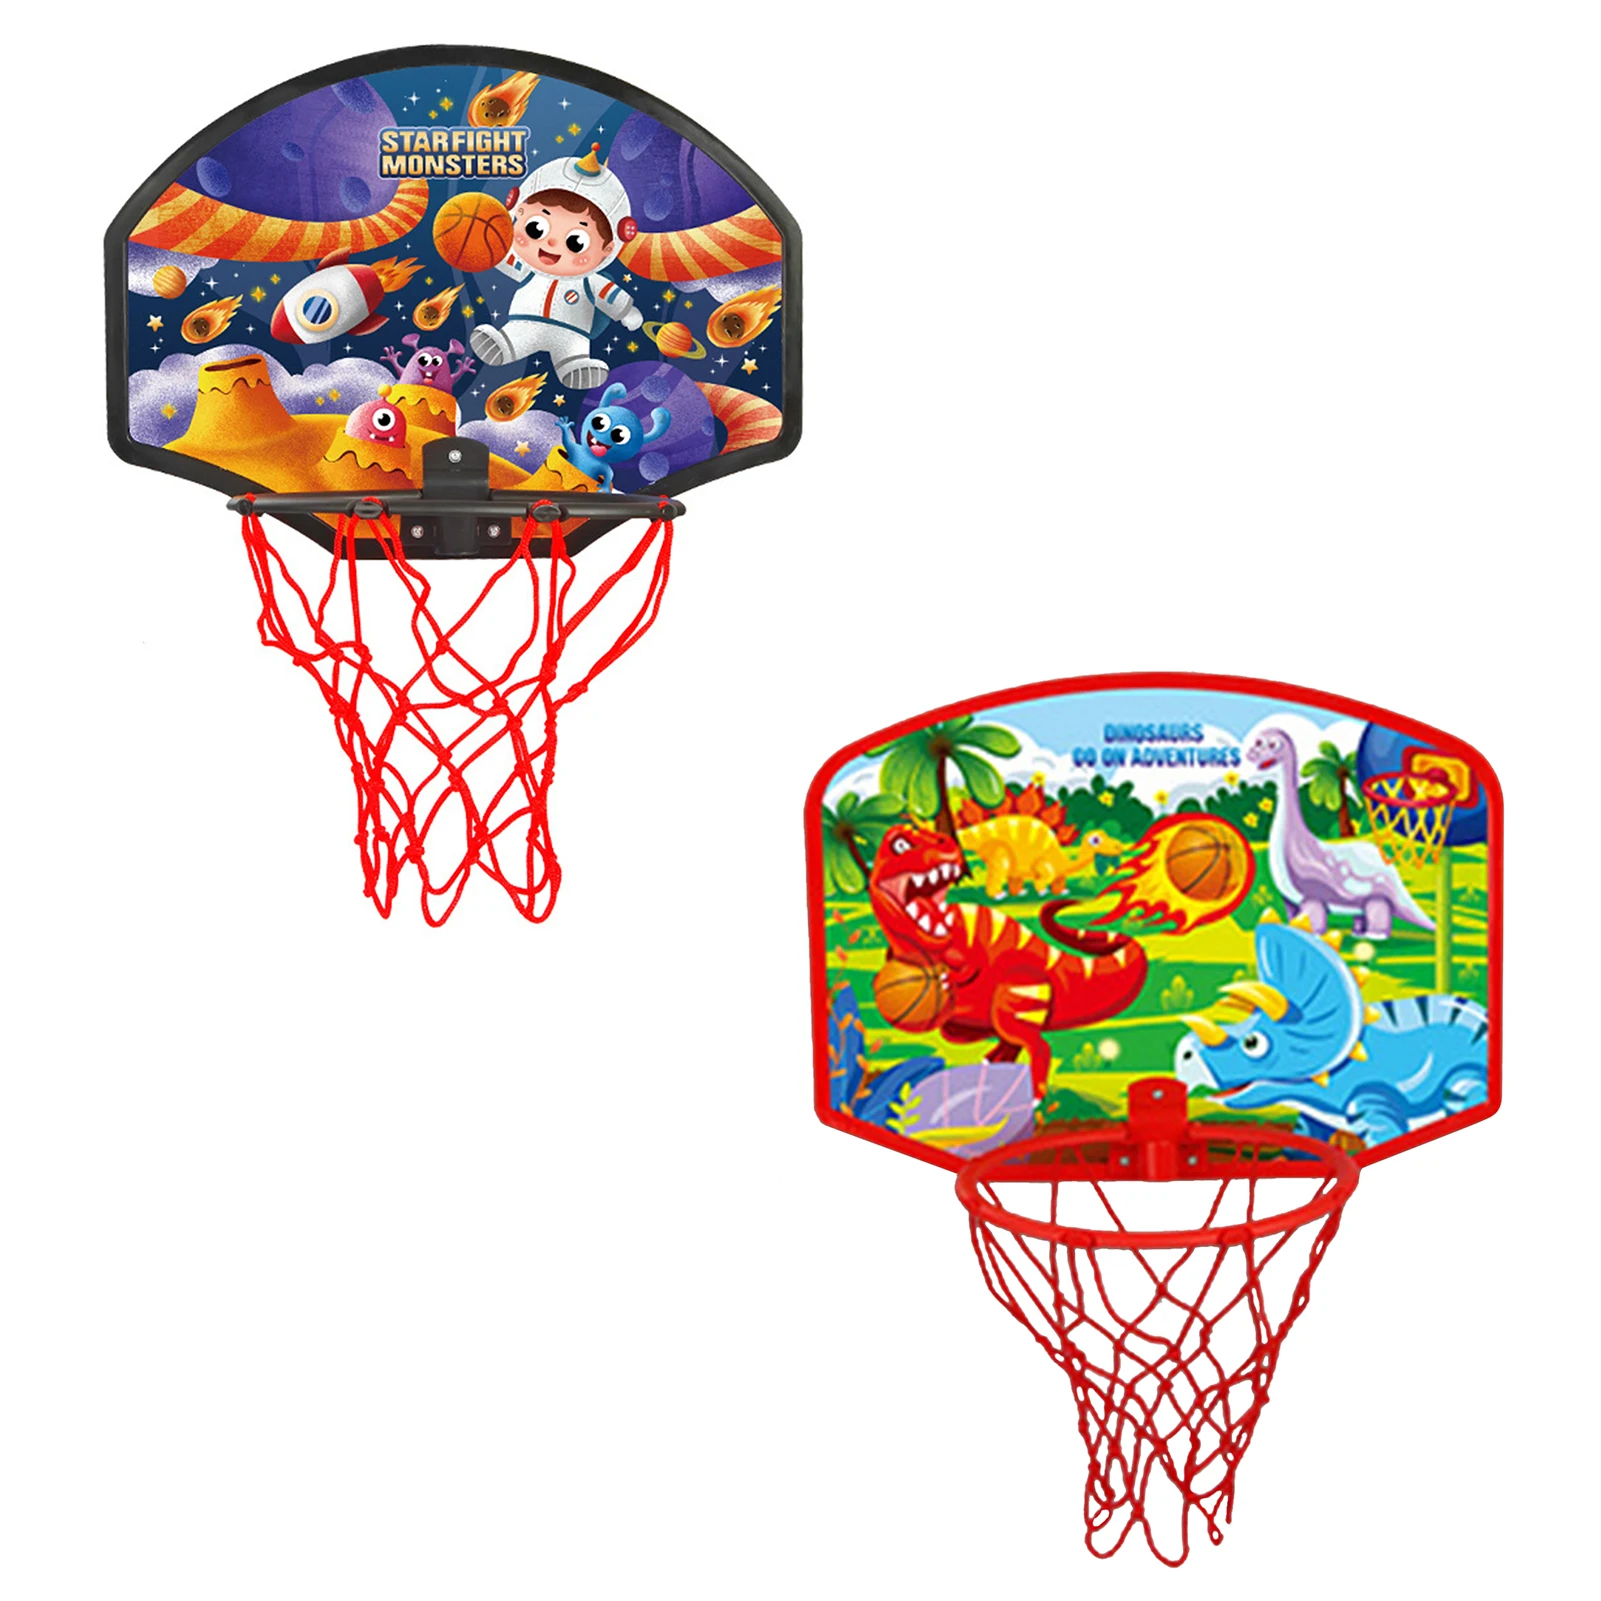 

Детский комнатный баскетбольный обруч с 1 баскетбольным мячом, детский мини-баскетбольный обруч, набор игрушек для баскетбола, мяч, Спортив...